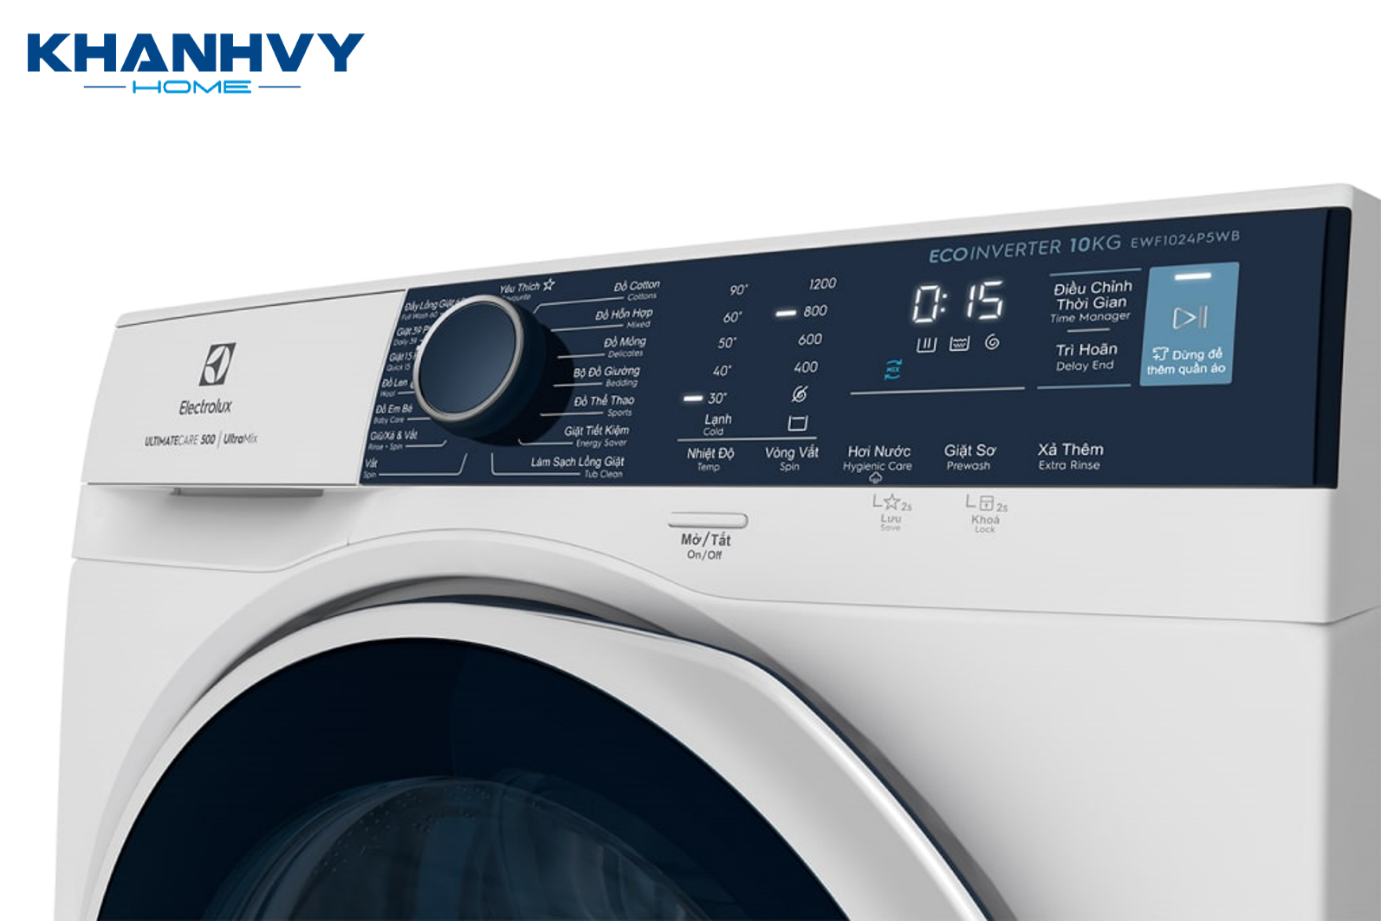 Máy giặt dễ sử dụng nhờ bảng điều khiển song ngữ Anh – Việt, núm xoay cùng phím cảm ứng và màn hình hiển thị hiện đại, cùng với 15 chương trình giặt giũ